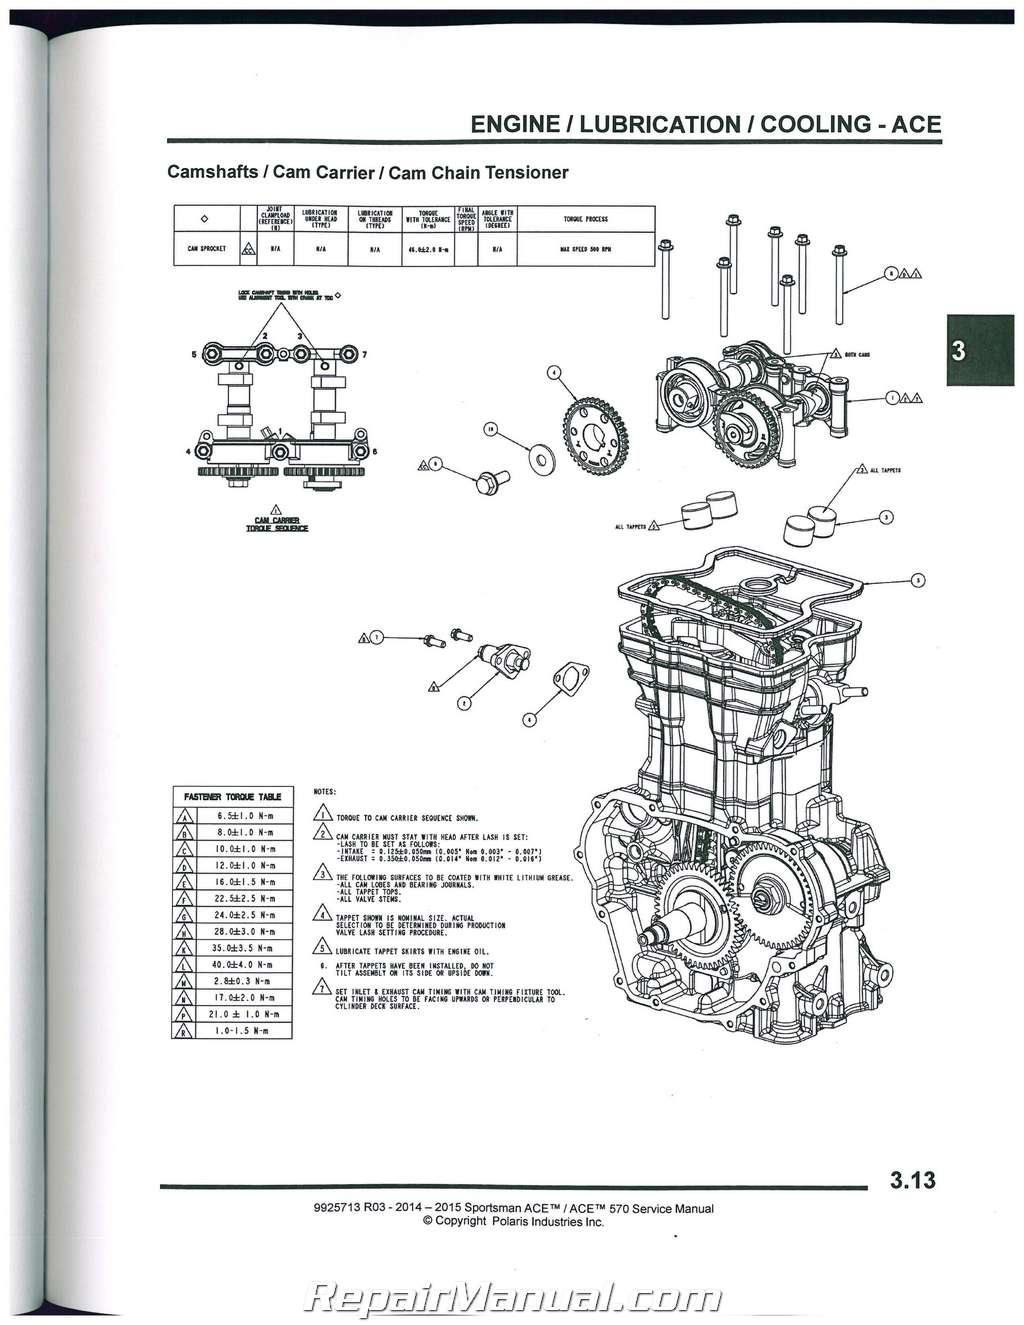 2015 durango repair manual